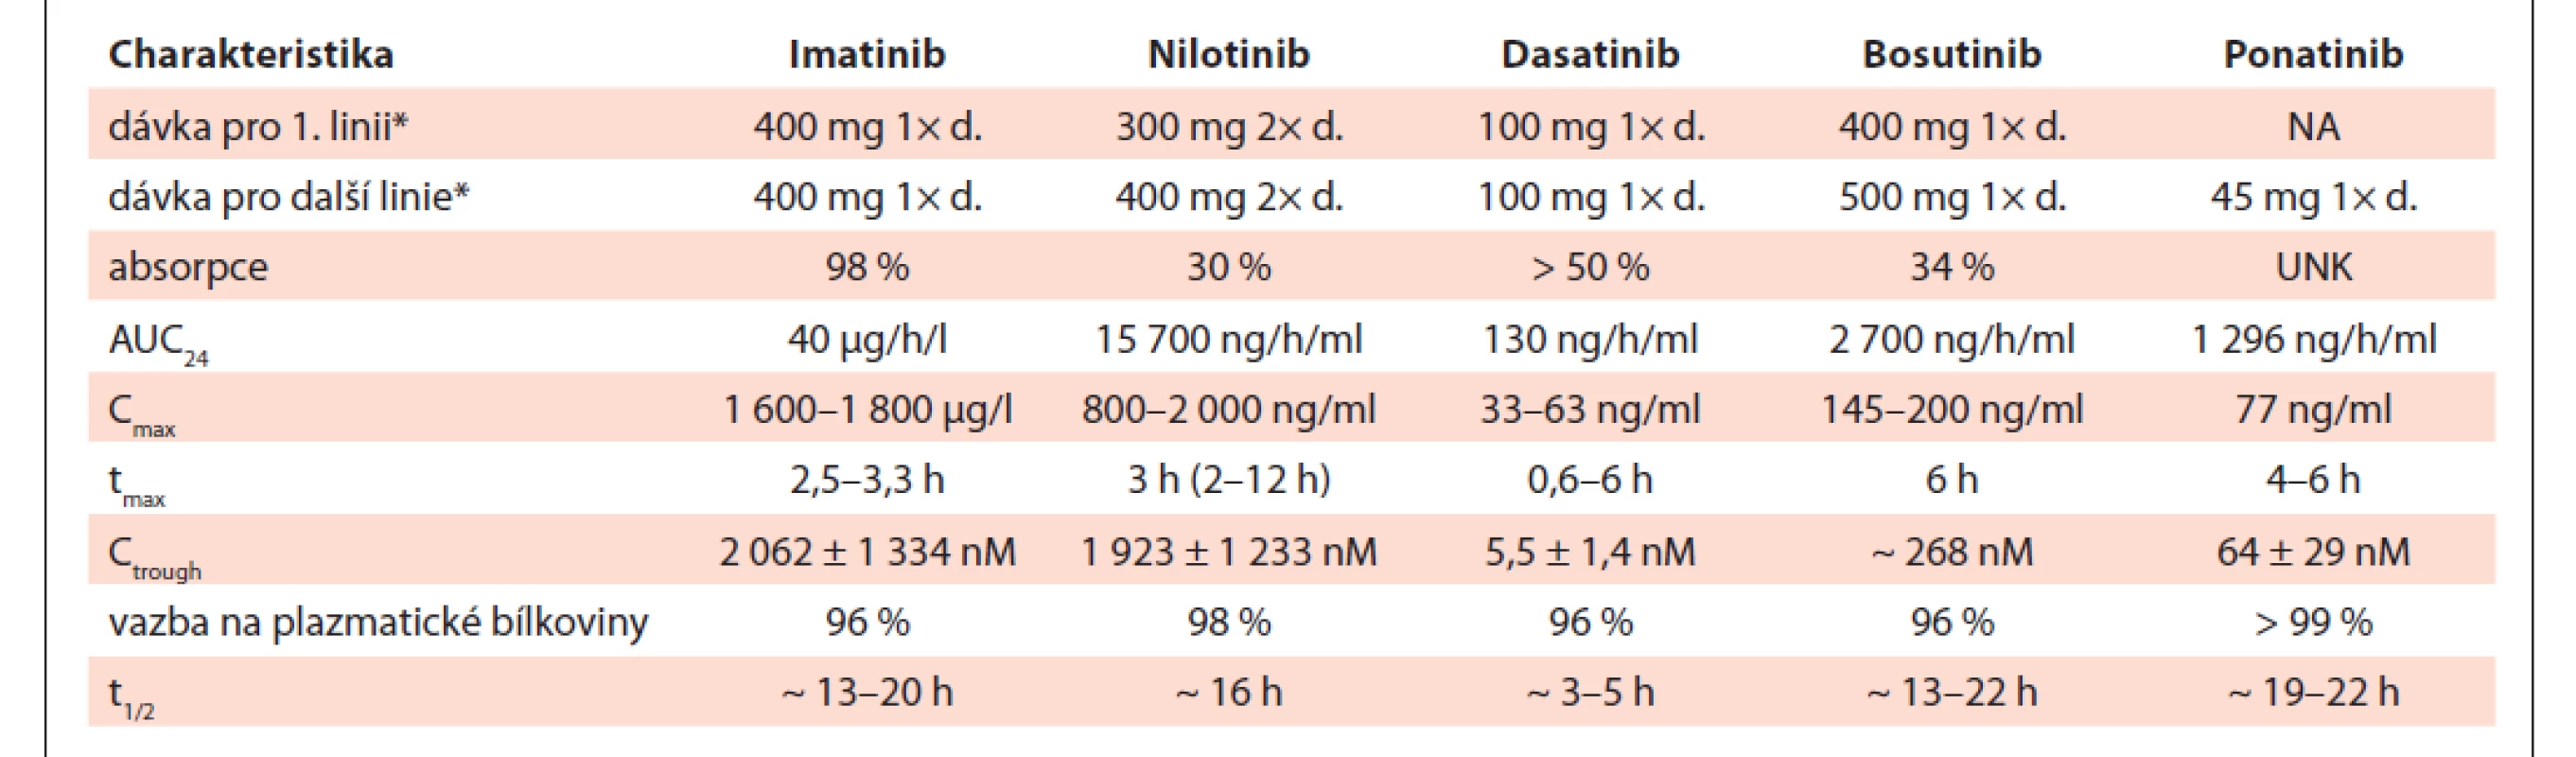 Standardní doporučené dávky a farmakokinetické charakteristiky jednotlivých inhibitorů tyrozinkináz.
Upraveno dle [69,70].